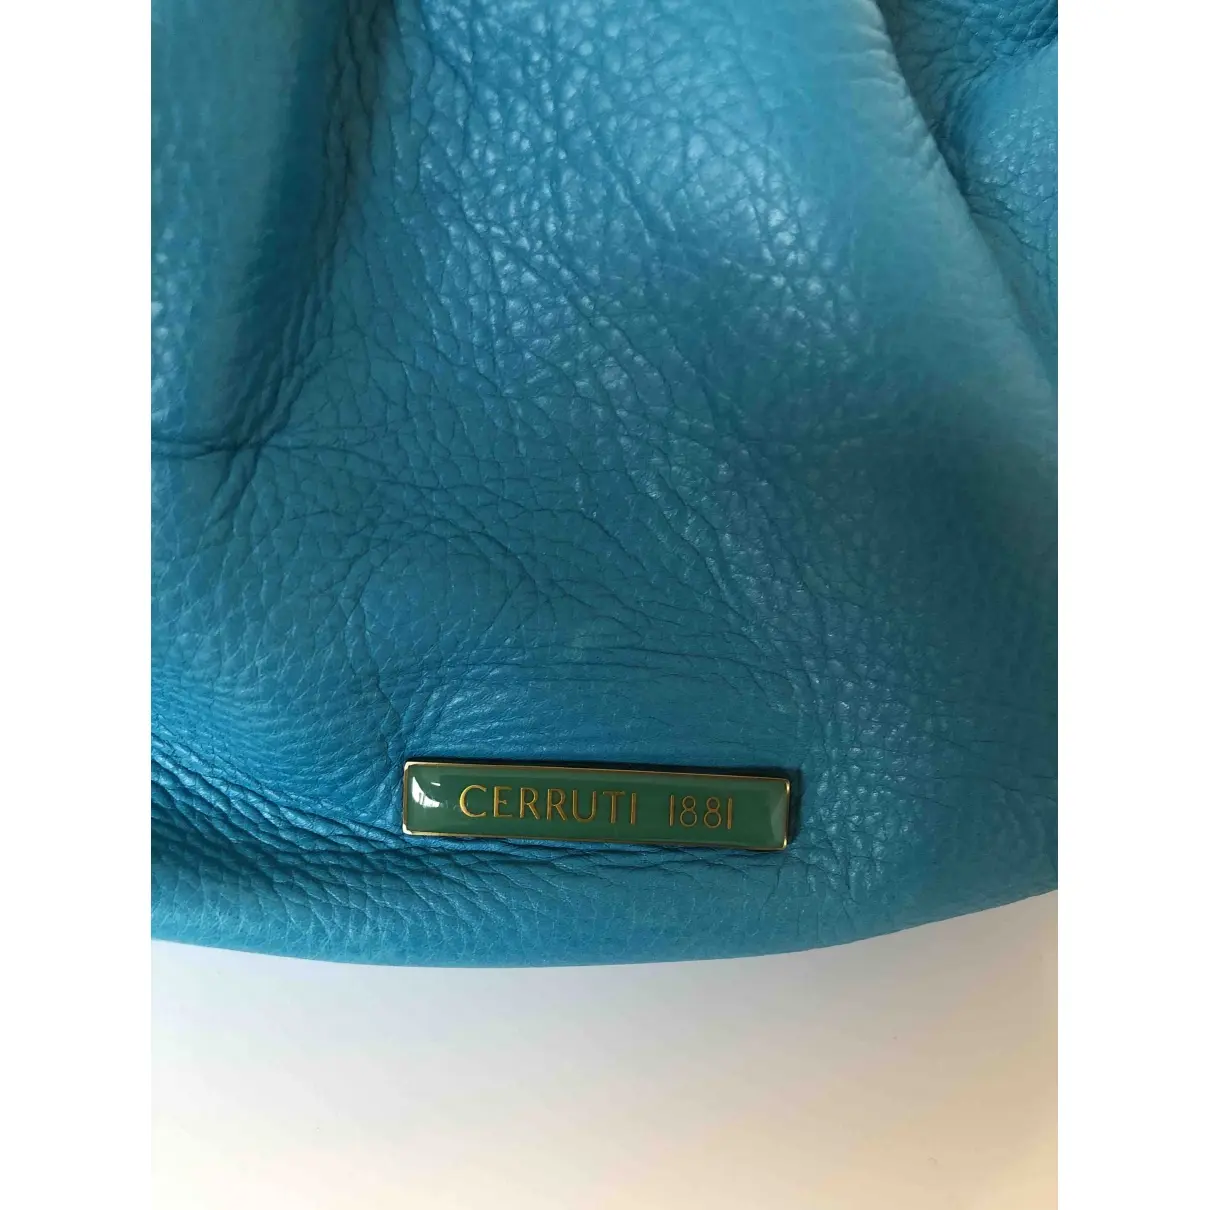 Luxury Cerruti Handbags Women - Vintage